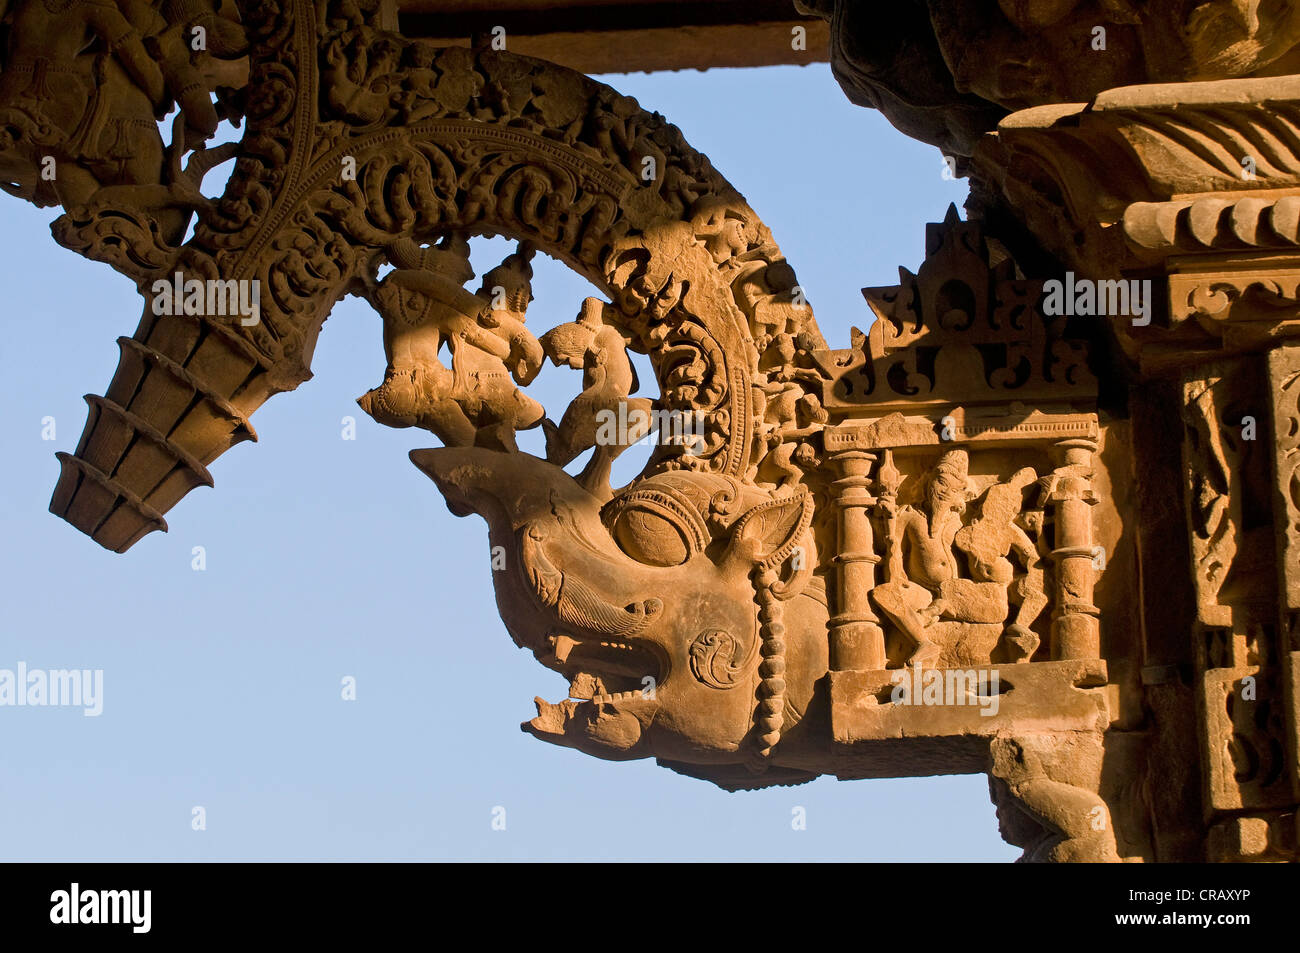 Mitica creatura e sculture decorative, Khajuraho Gruppo di Monumenti Patrimonio dell'Umanità UNESCO, Madhya Pradesh, India Foto Stock